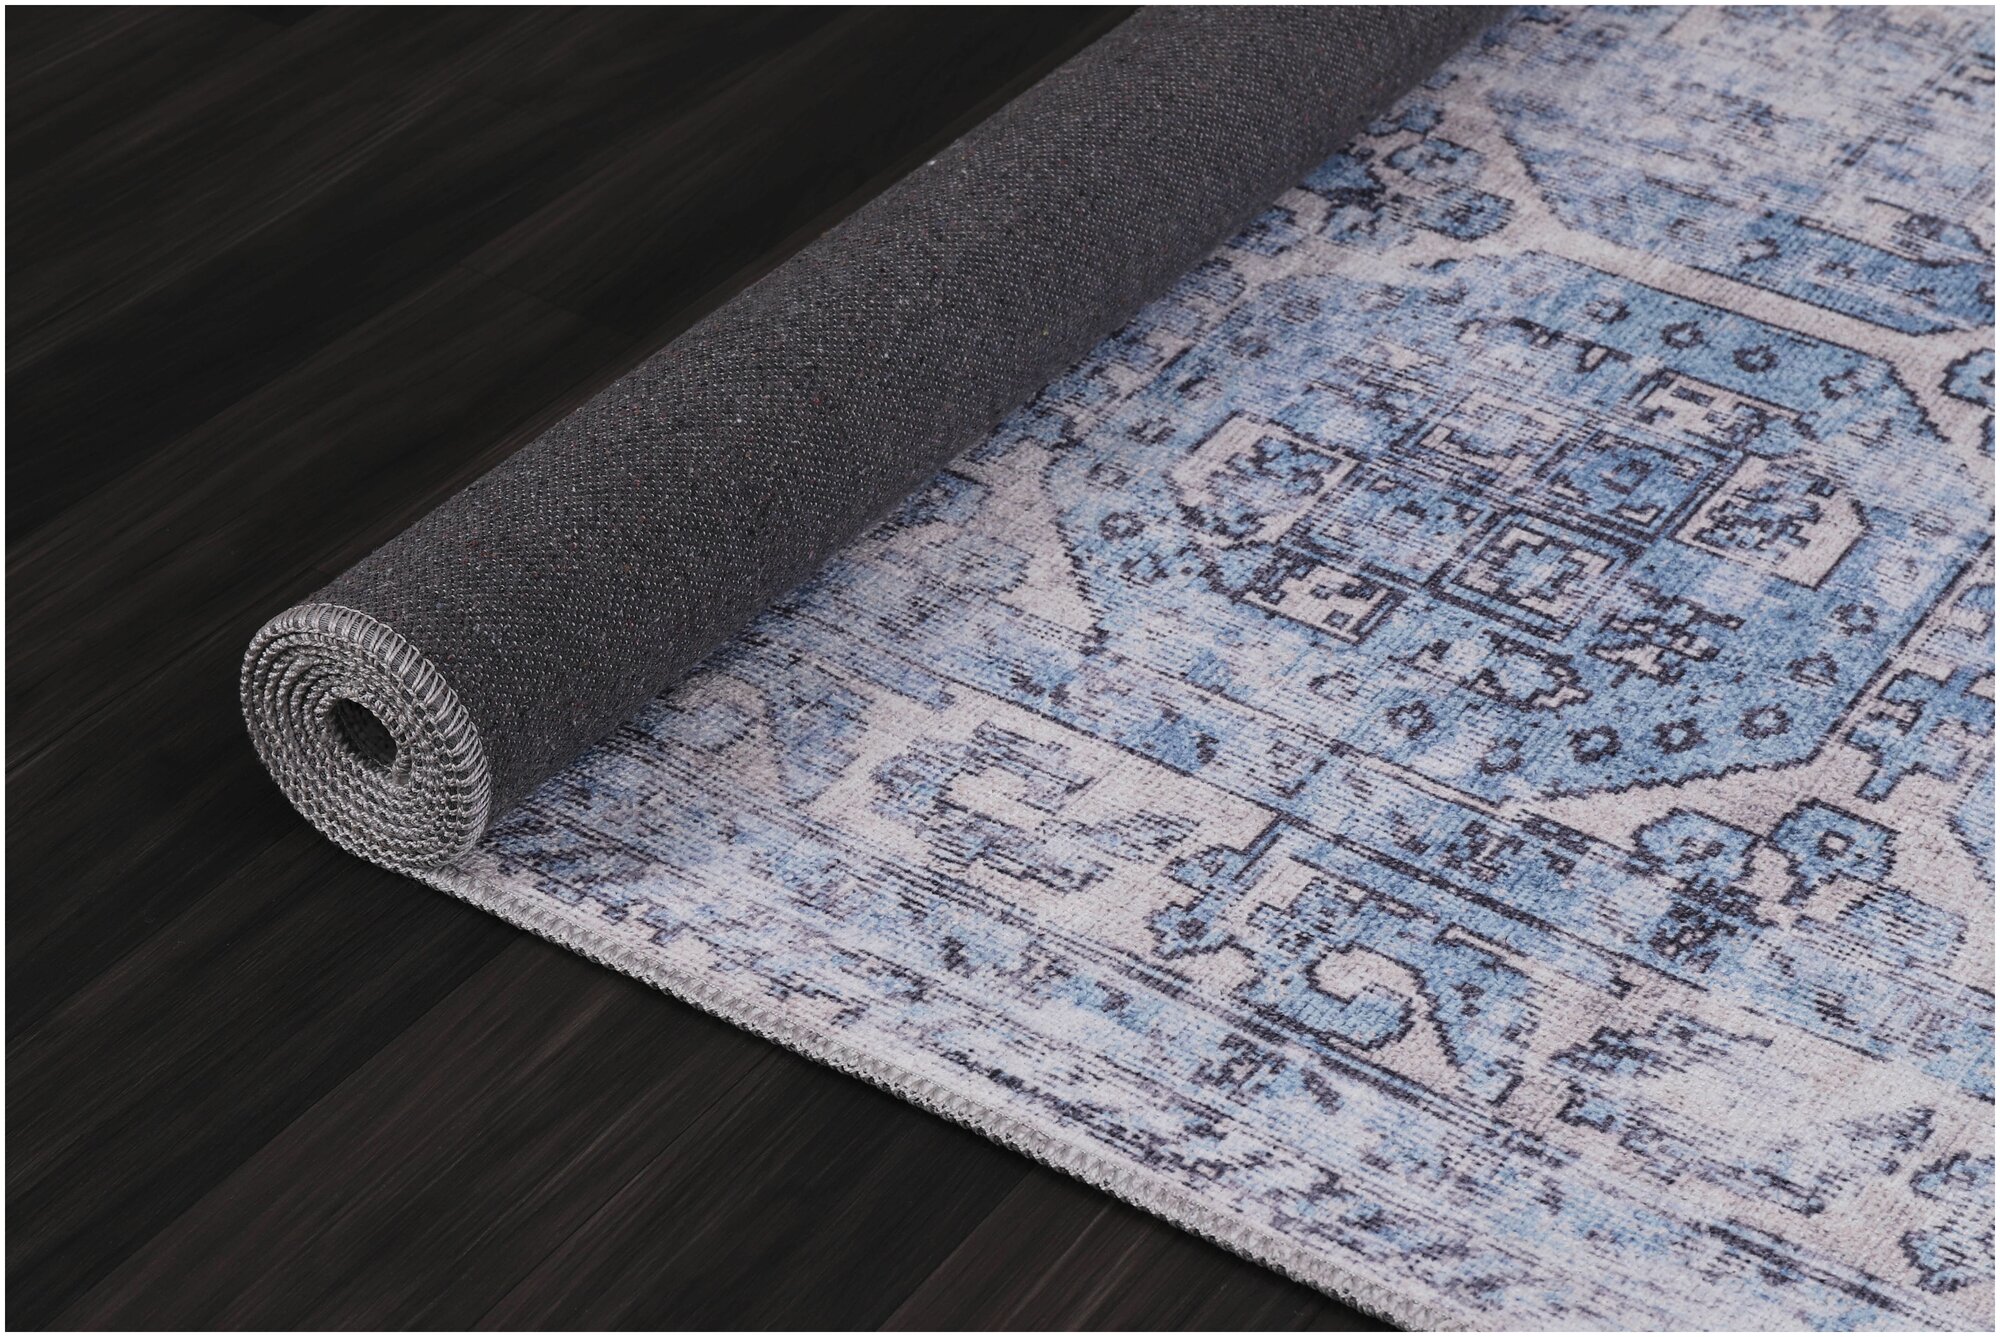 Ковер для гостиной,для коридора хлопковый, ковер турецкий килим,DivaHome,0.4X 0.6м,с оригинальным орнаментом. - фотография № 4